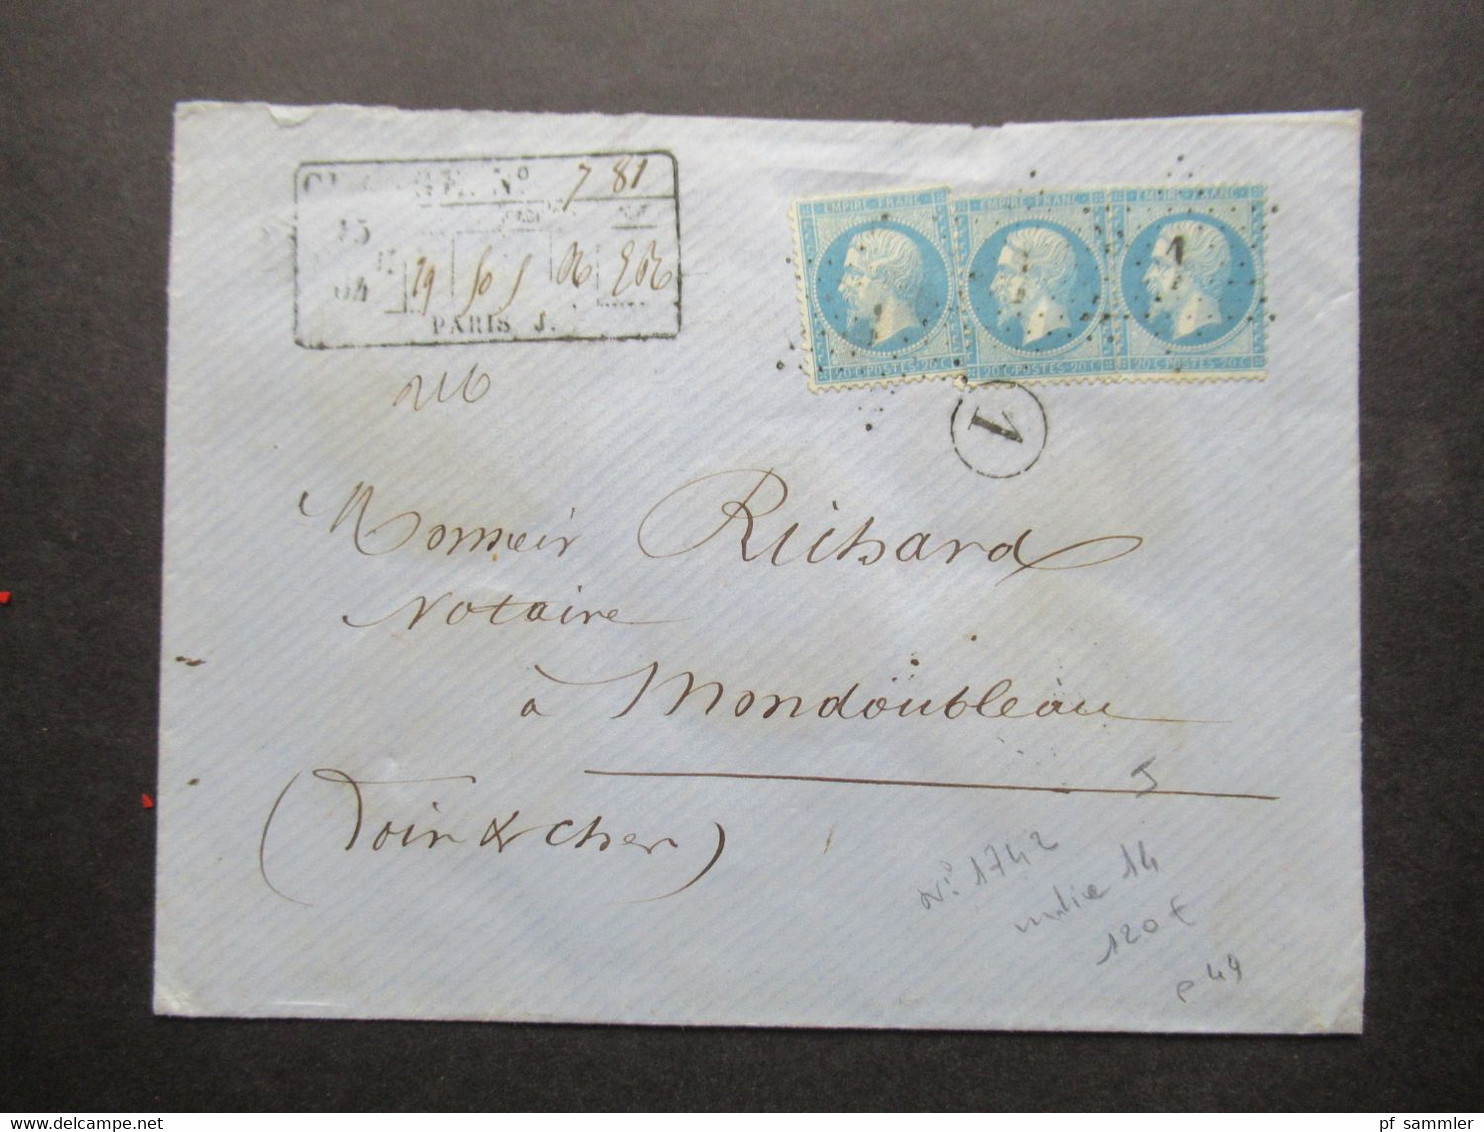 Frankreich 1864 Napoléon Michel Nr.21 (3) MeF Auf Charge Brief / Wertbrief Sternstempel Mit Nummer 1 Paris - 1862 Napoléon III